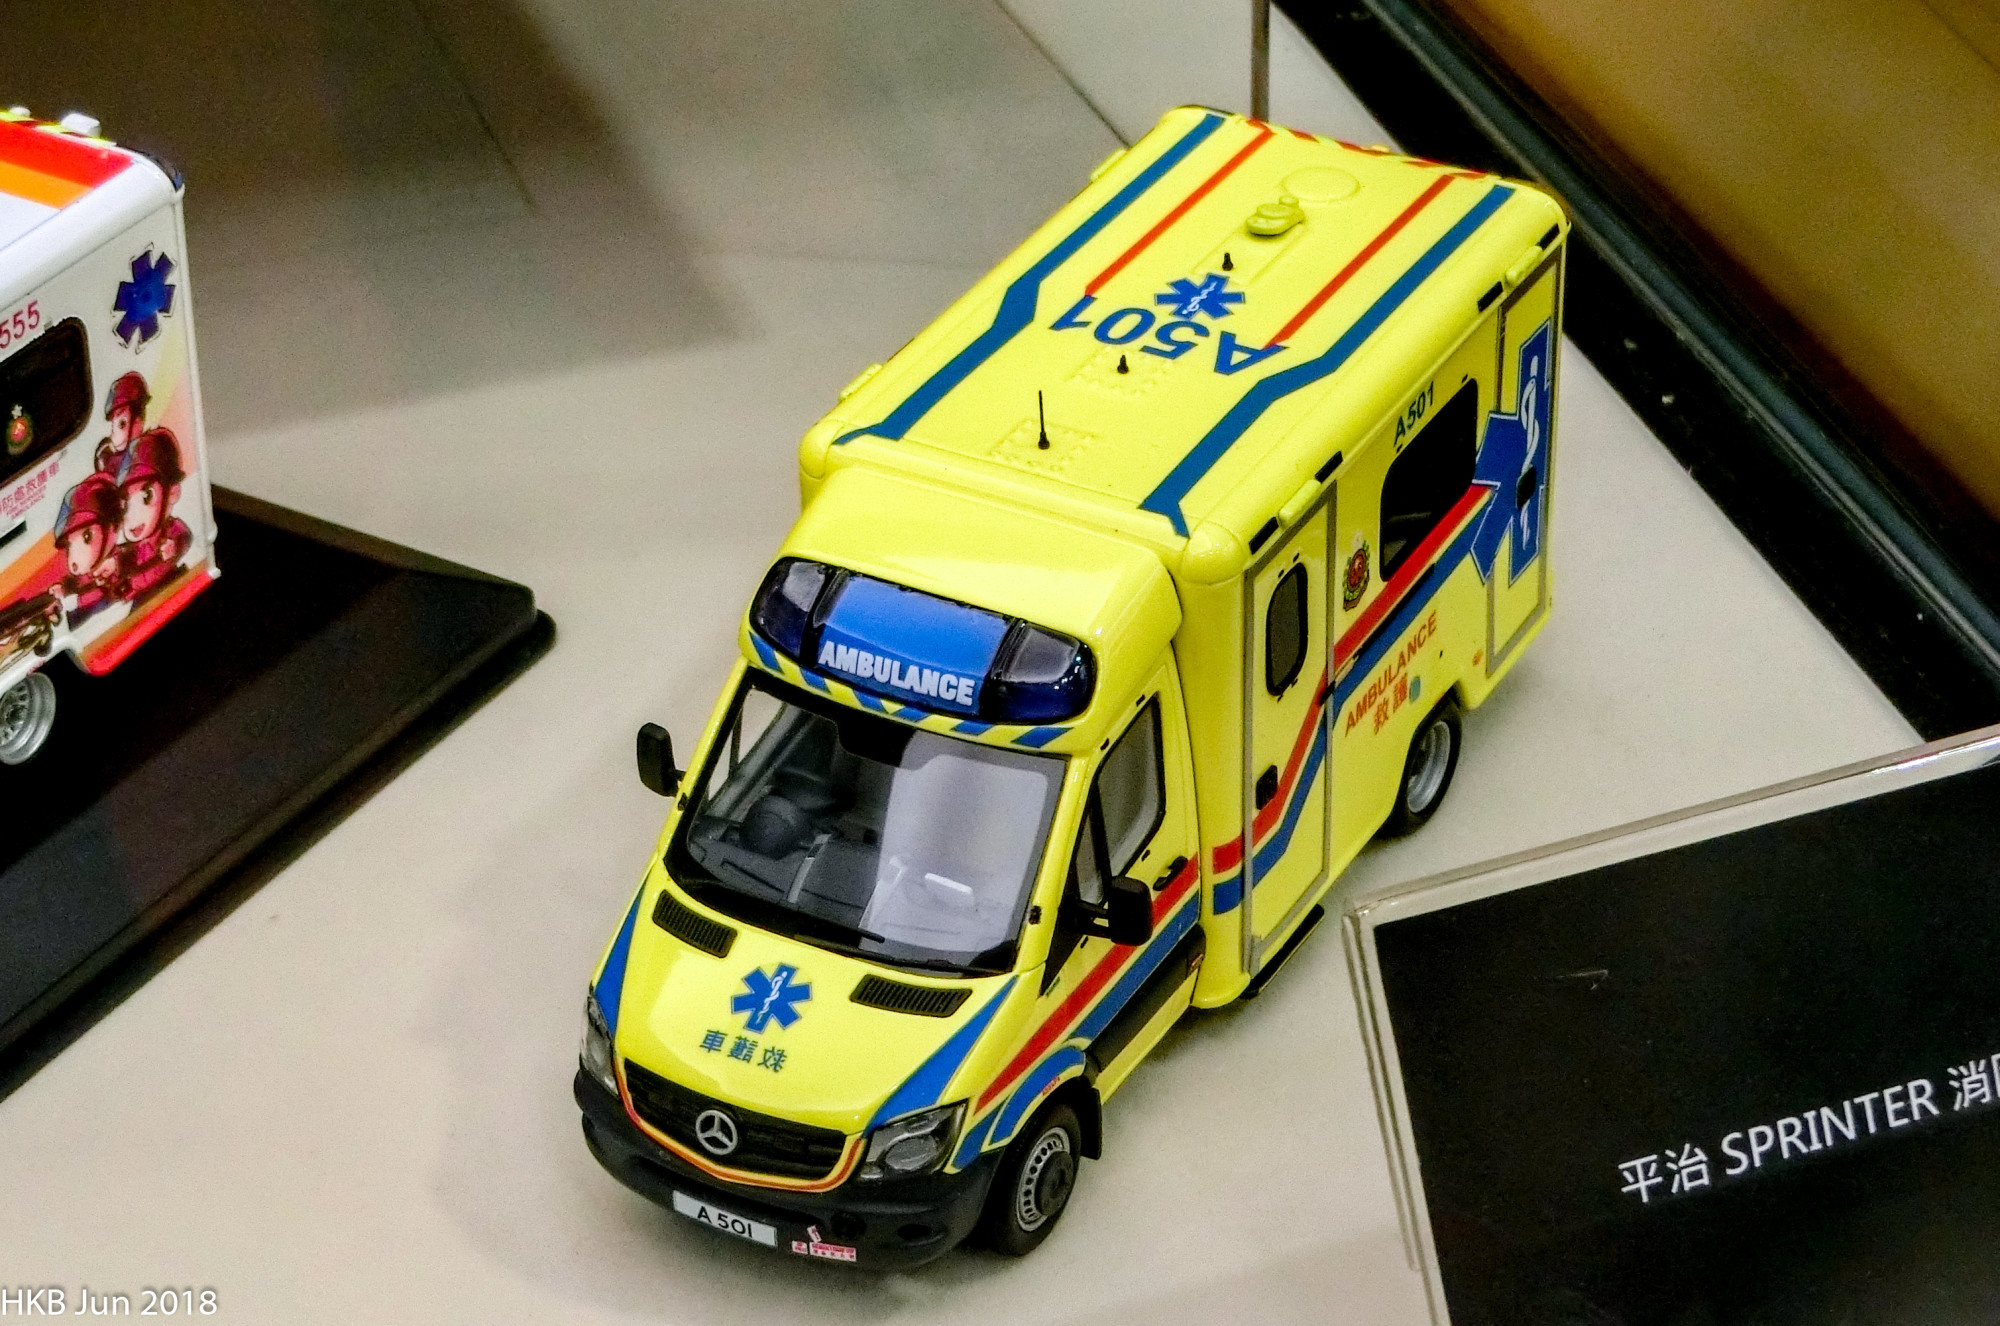 黃色救護車 A501